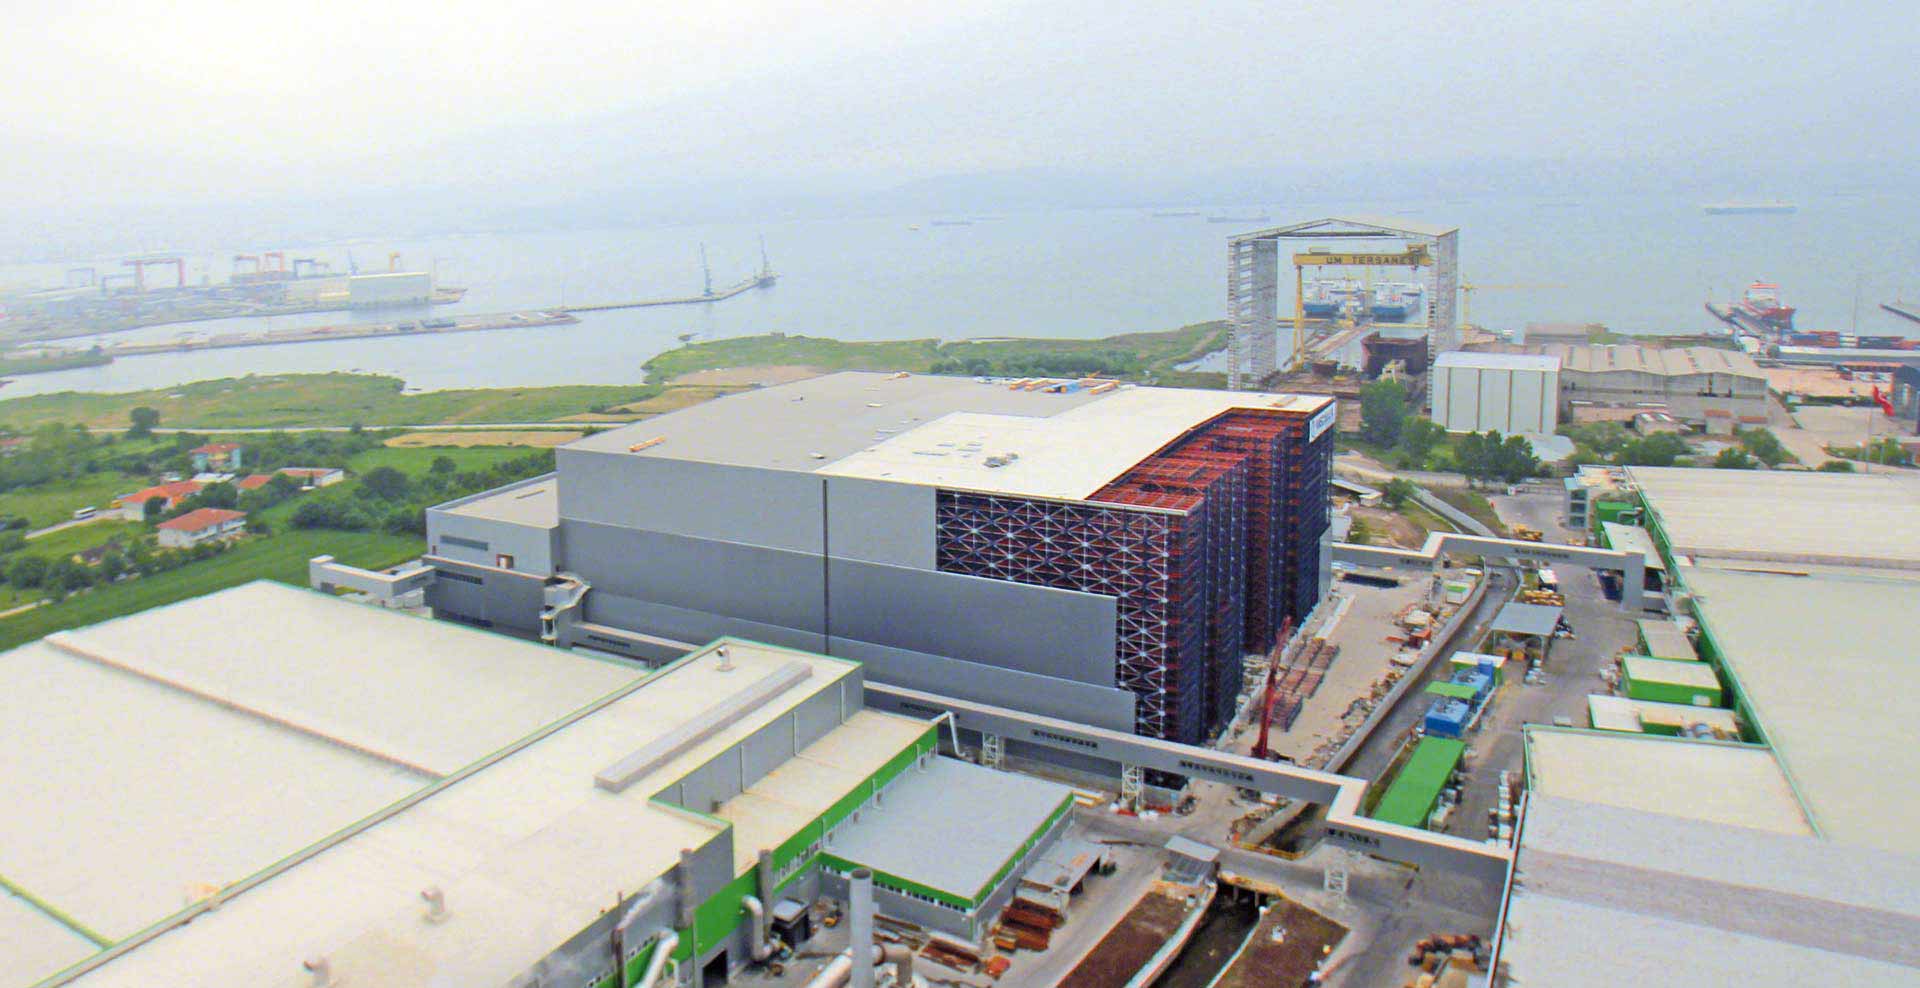 Hayat Kimya的货架支撑仓库是欧洲最大的仓库之一